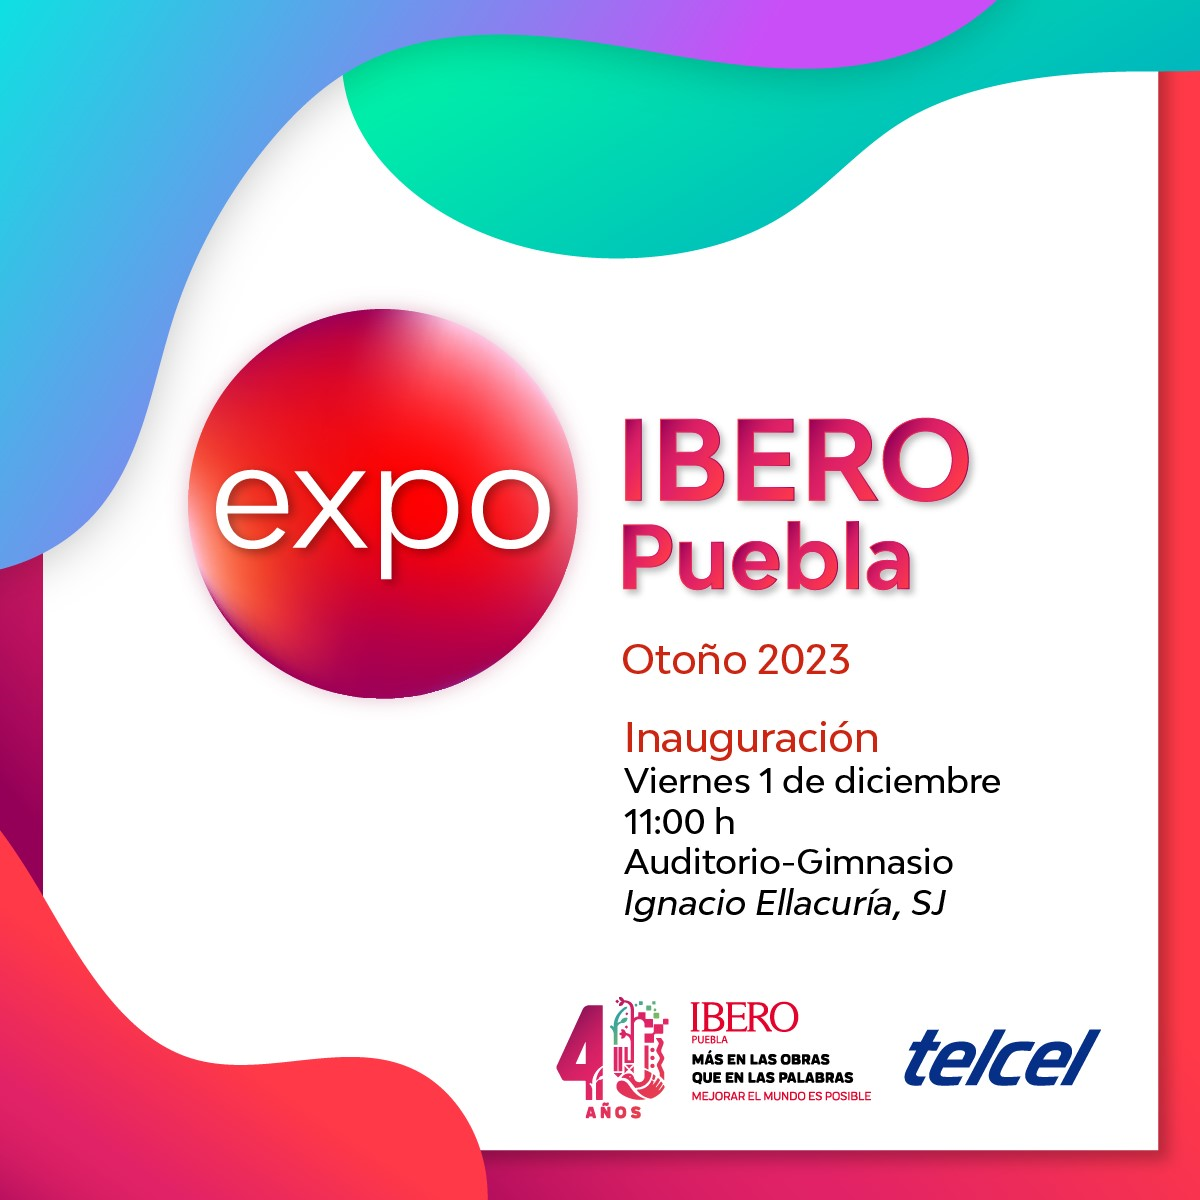 Invitación IBERO Puebla: EXPO IBERO Puebla Otoño 2023